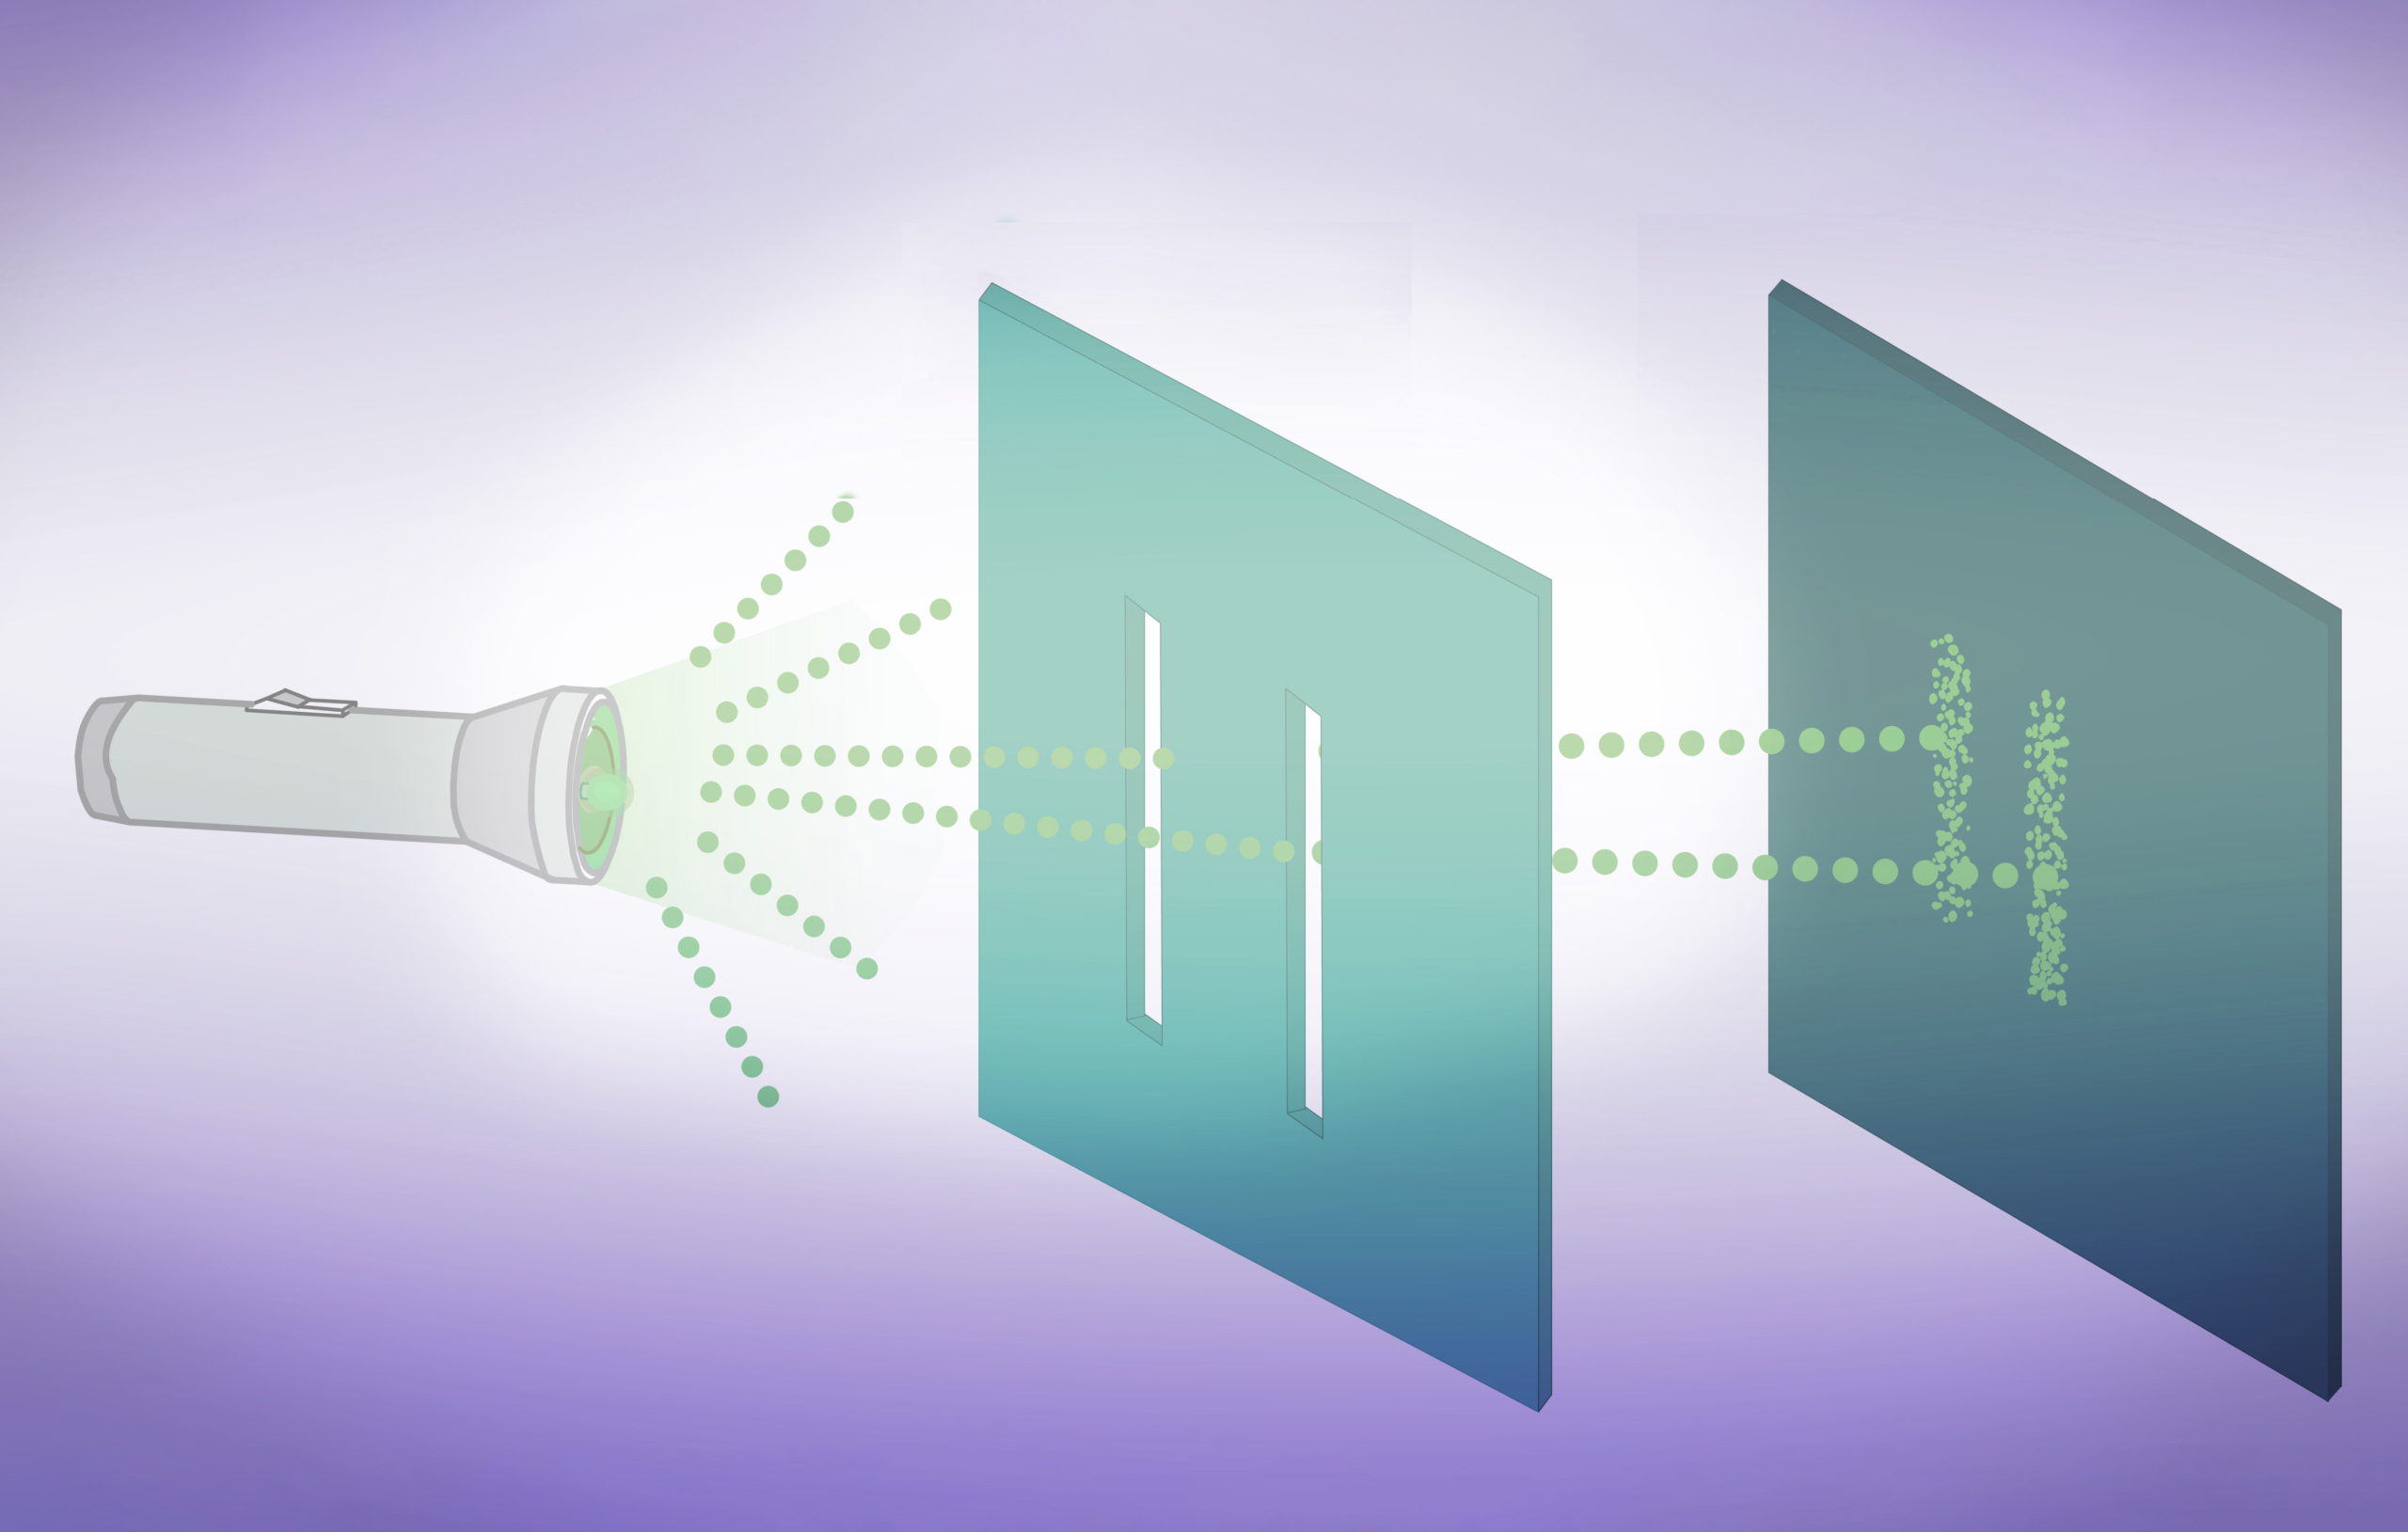 Hình minh họa thí nghiệm hai khe với sóng xác suất bị triệt tiêu. (Hình minh họa – Grayjay/Shutterstock)